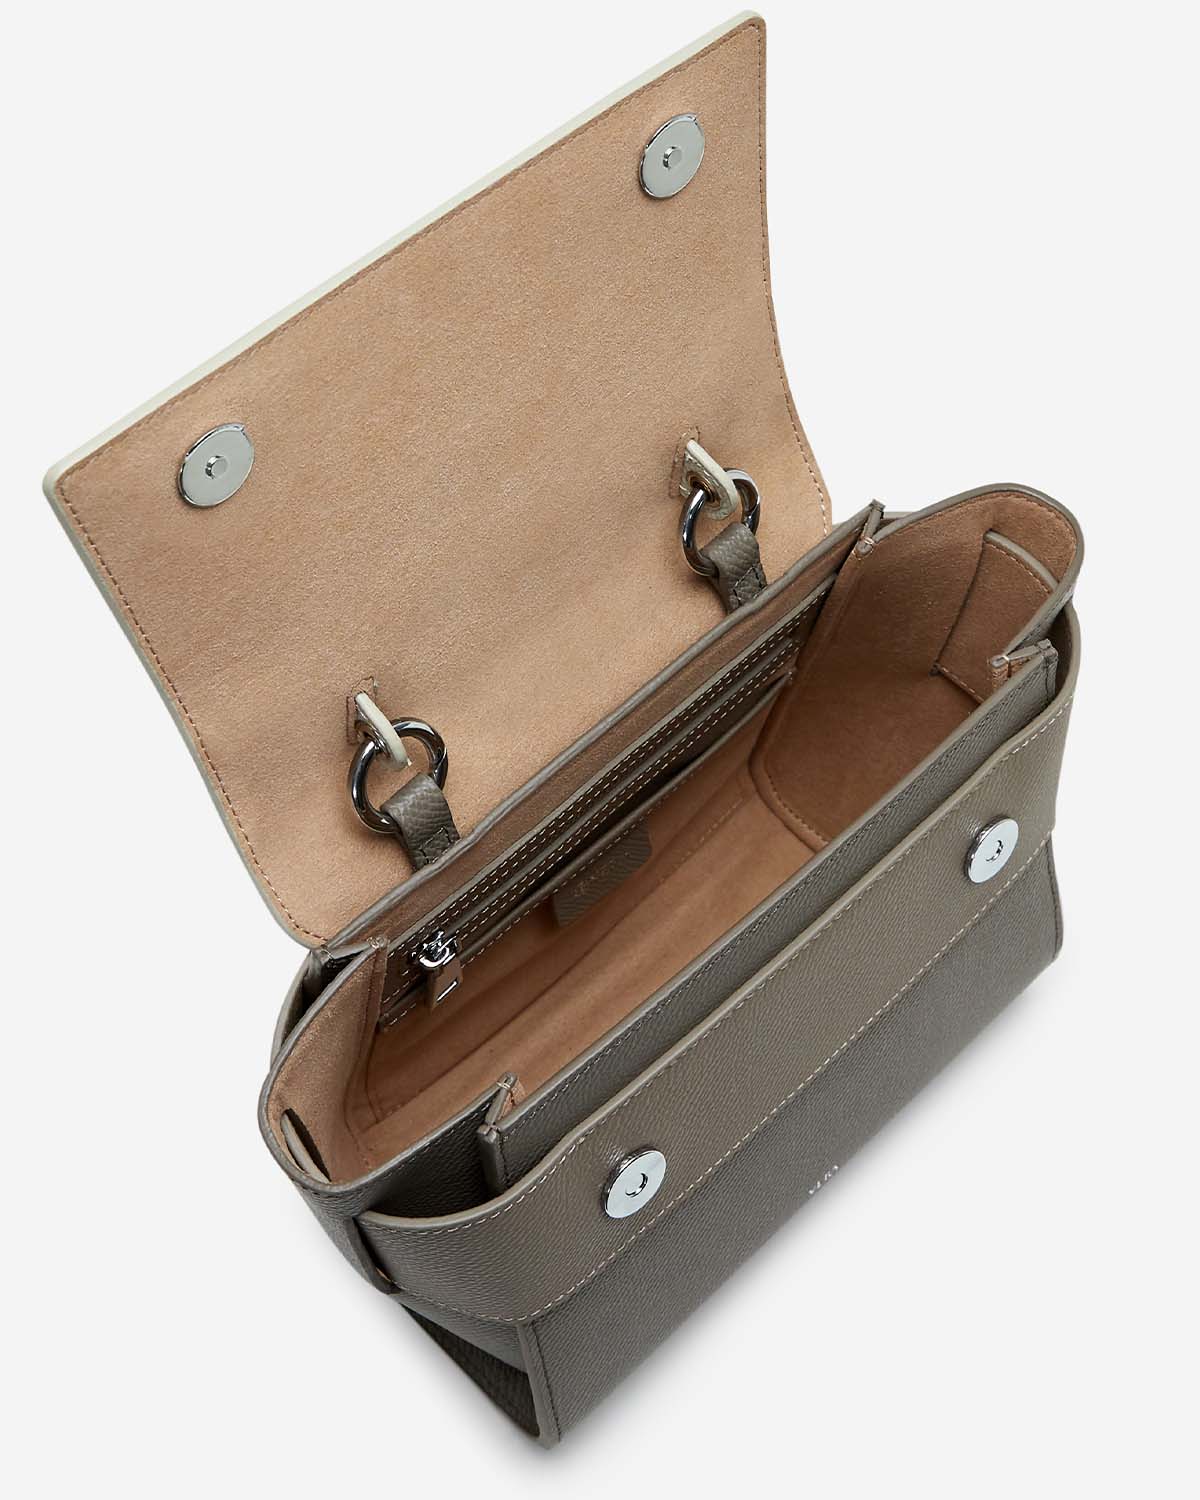 กระเป๋าถือหนังแท้ VERA Margo Leather Handbag, Size 20 สี Perfect Taupe